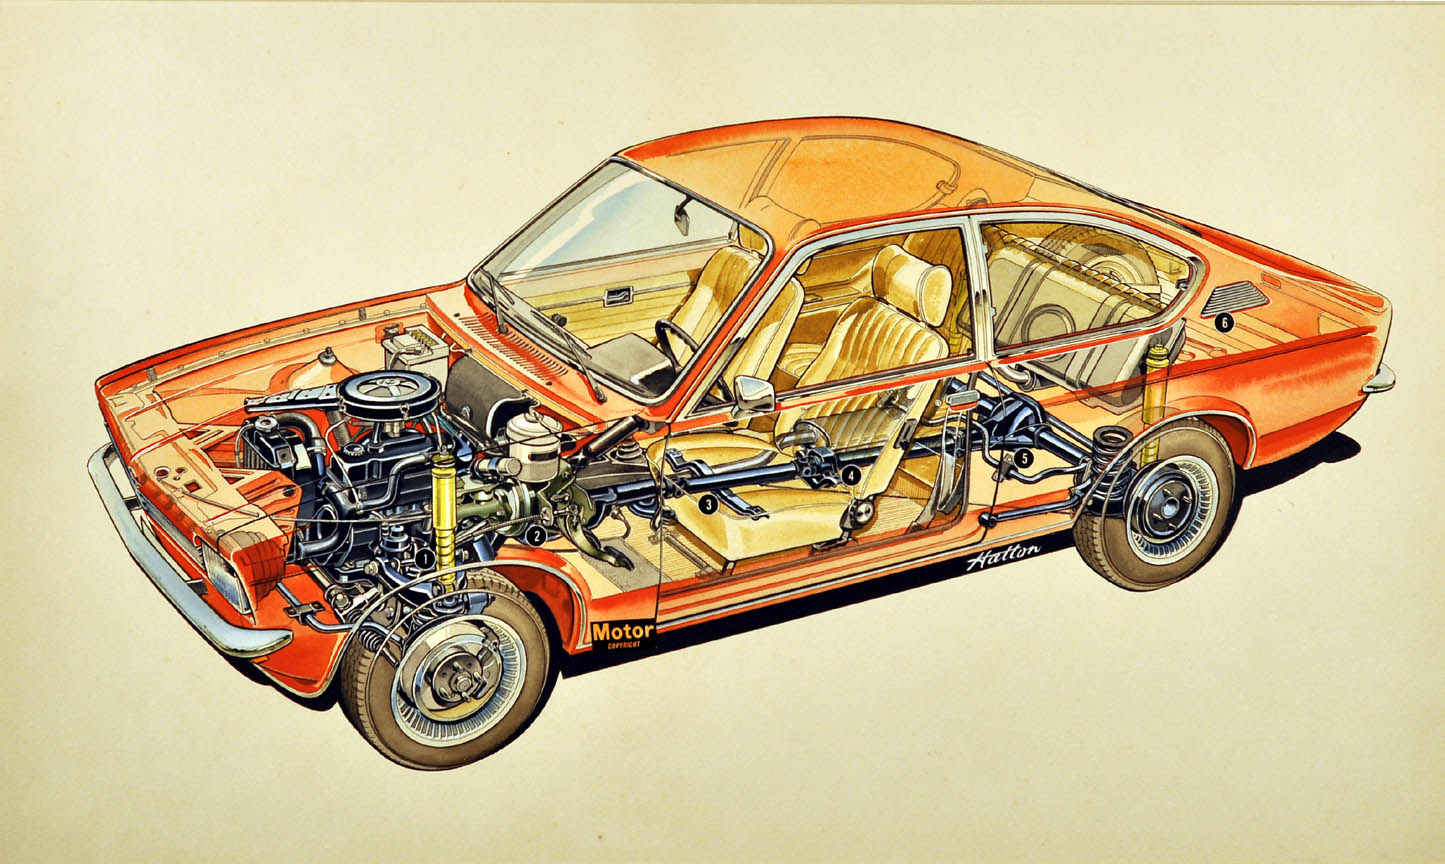 Motor Week Magazine Original Illustration by Hatton